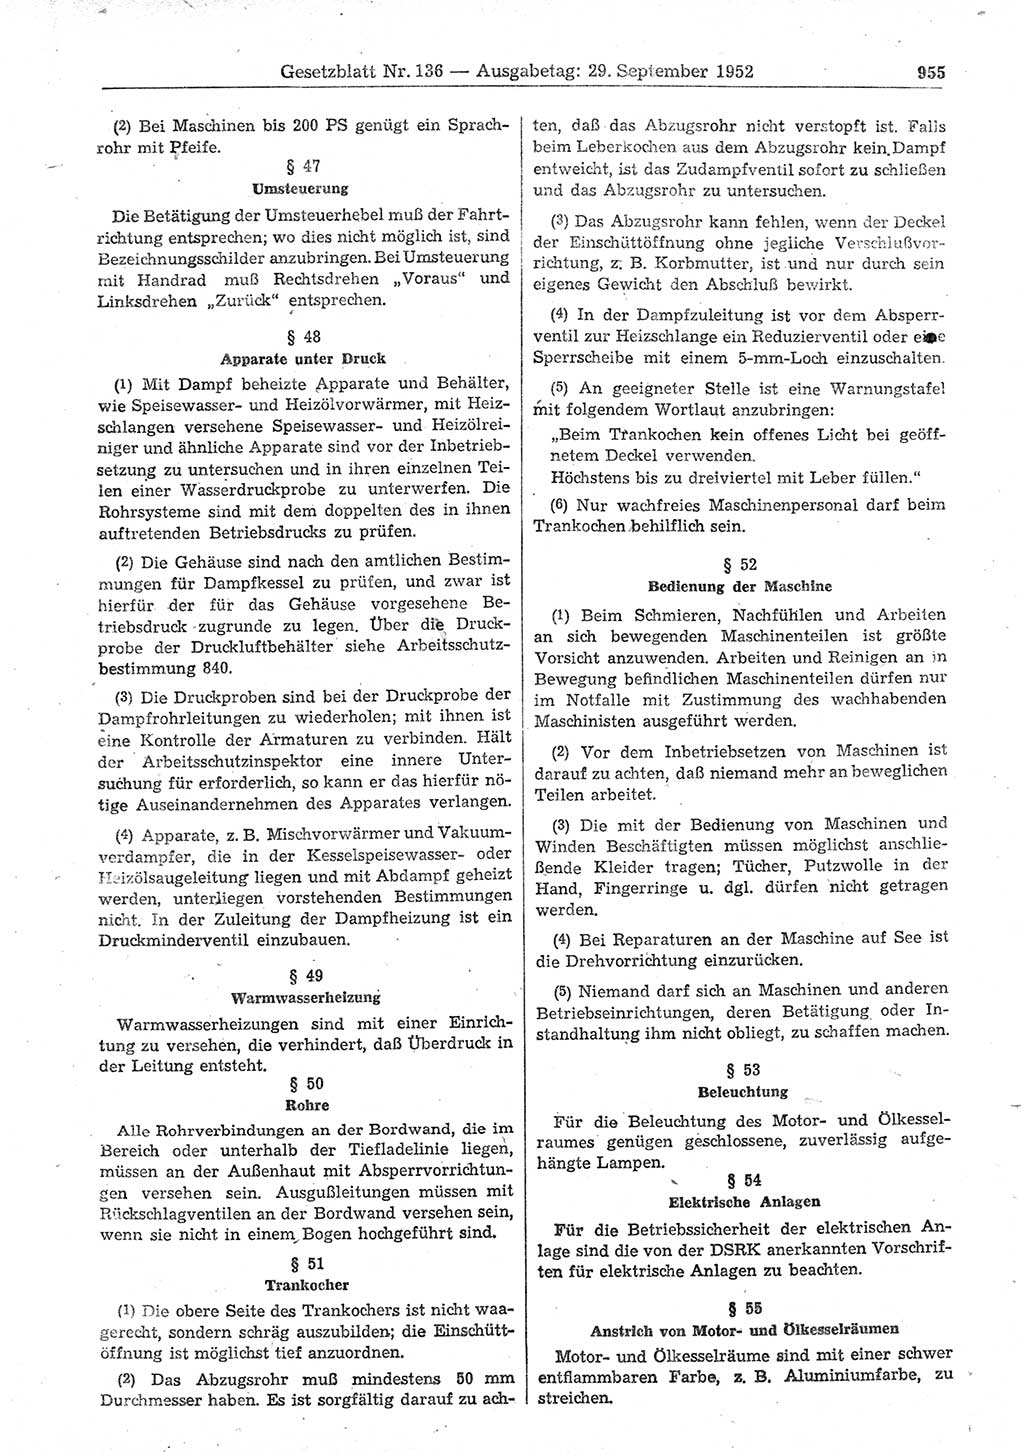 Gesetzblatt (GBl.) der Deutschen Demokratischen Republik (DDR) 1952, Seite 955 (GBl. DDR 1952, S. 955)